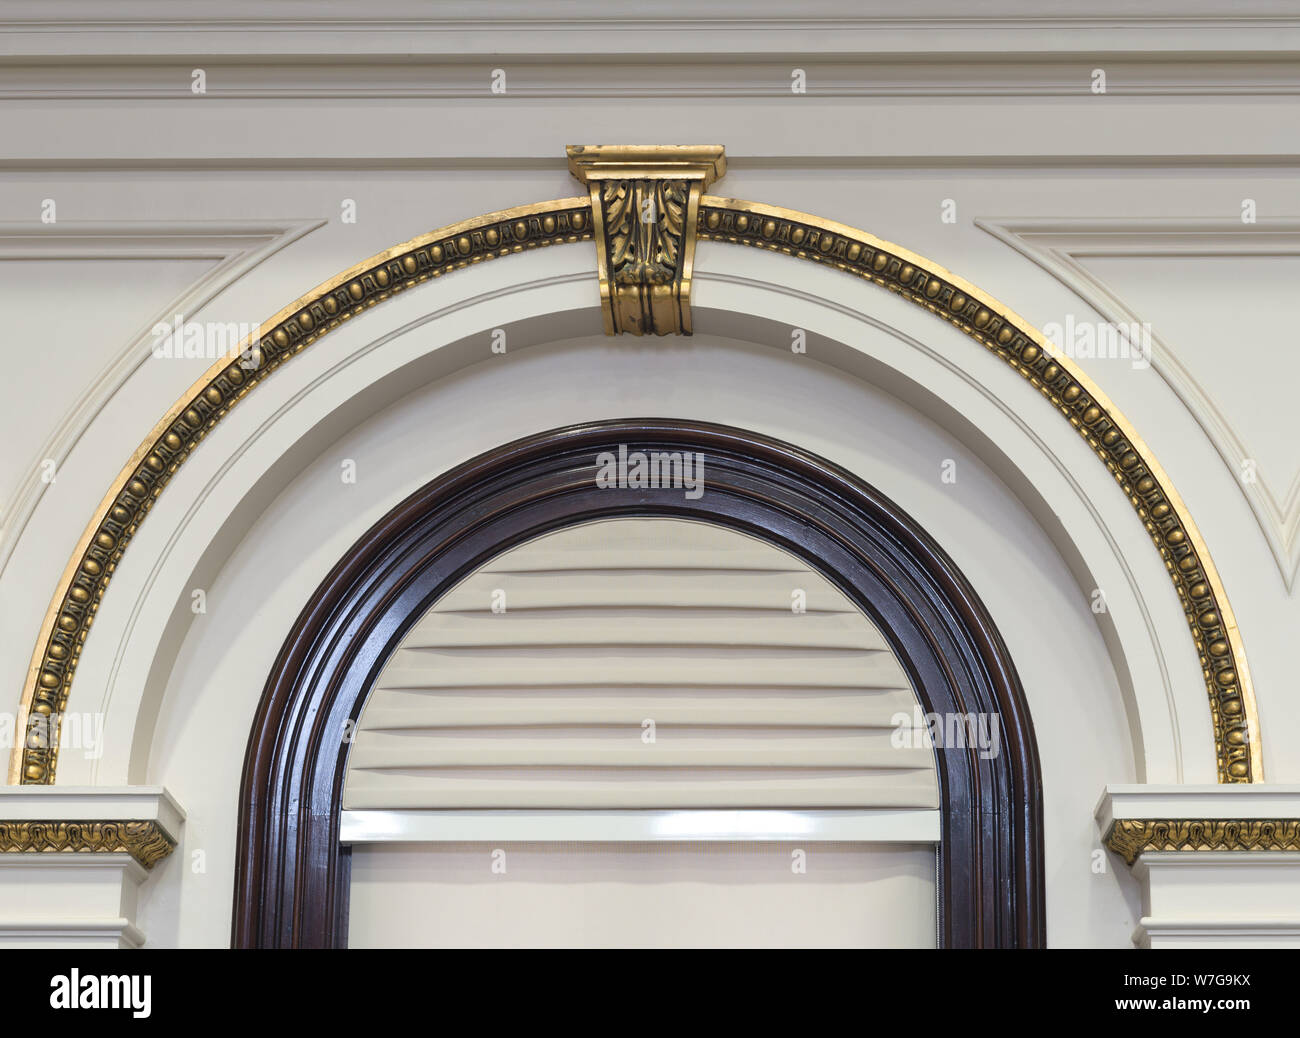 Les détails architecturaux. U.S. Custom House, Portland, Maine Banque D'Images